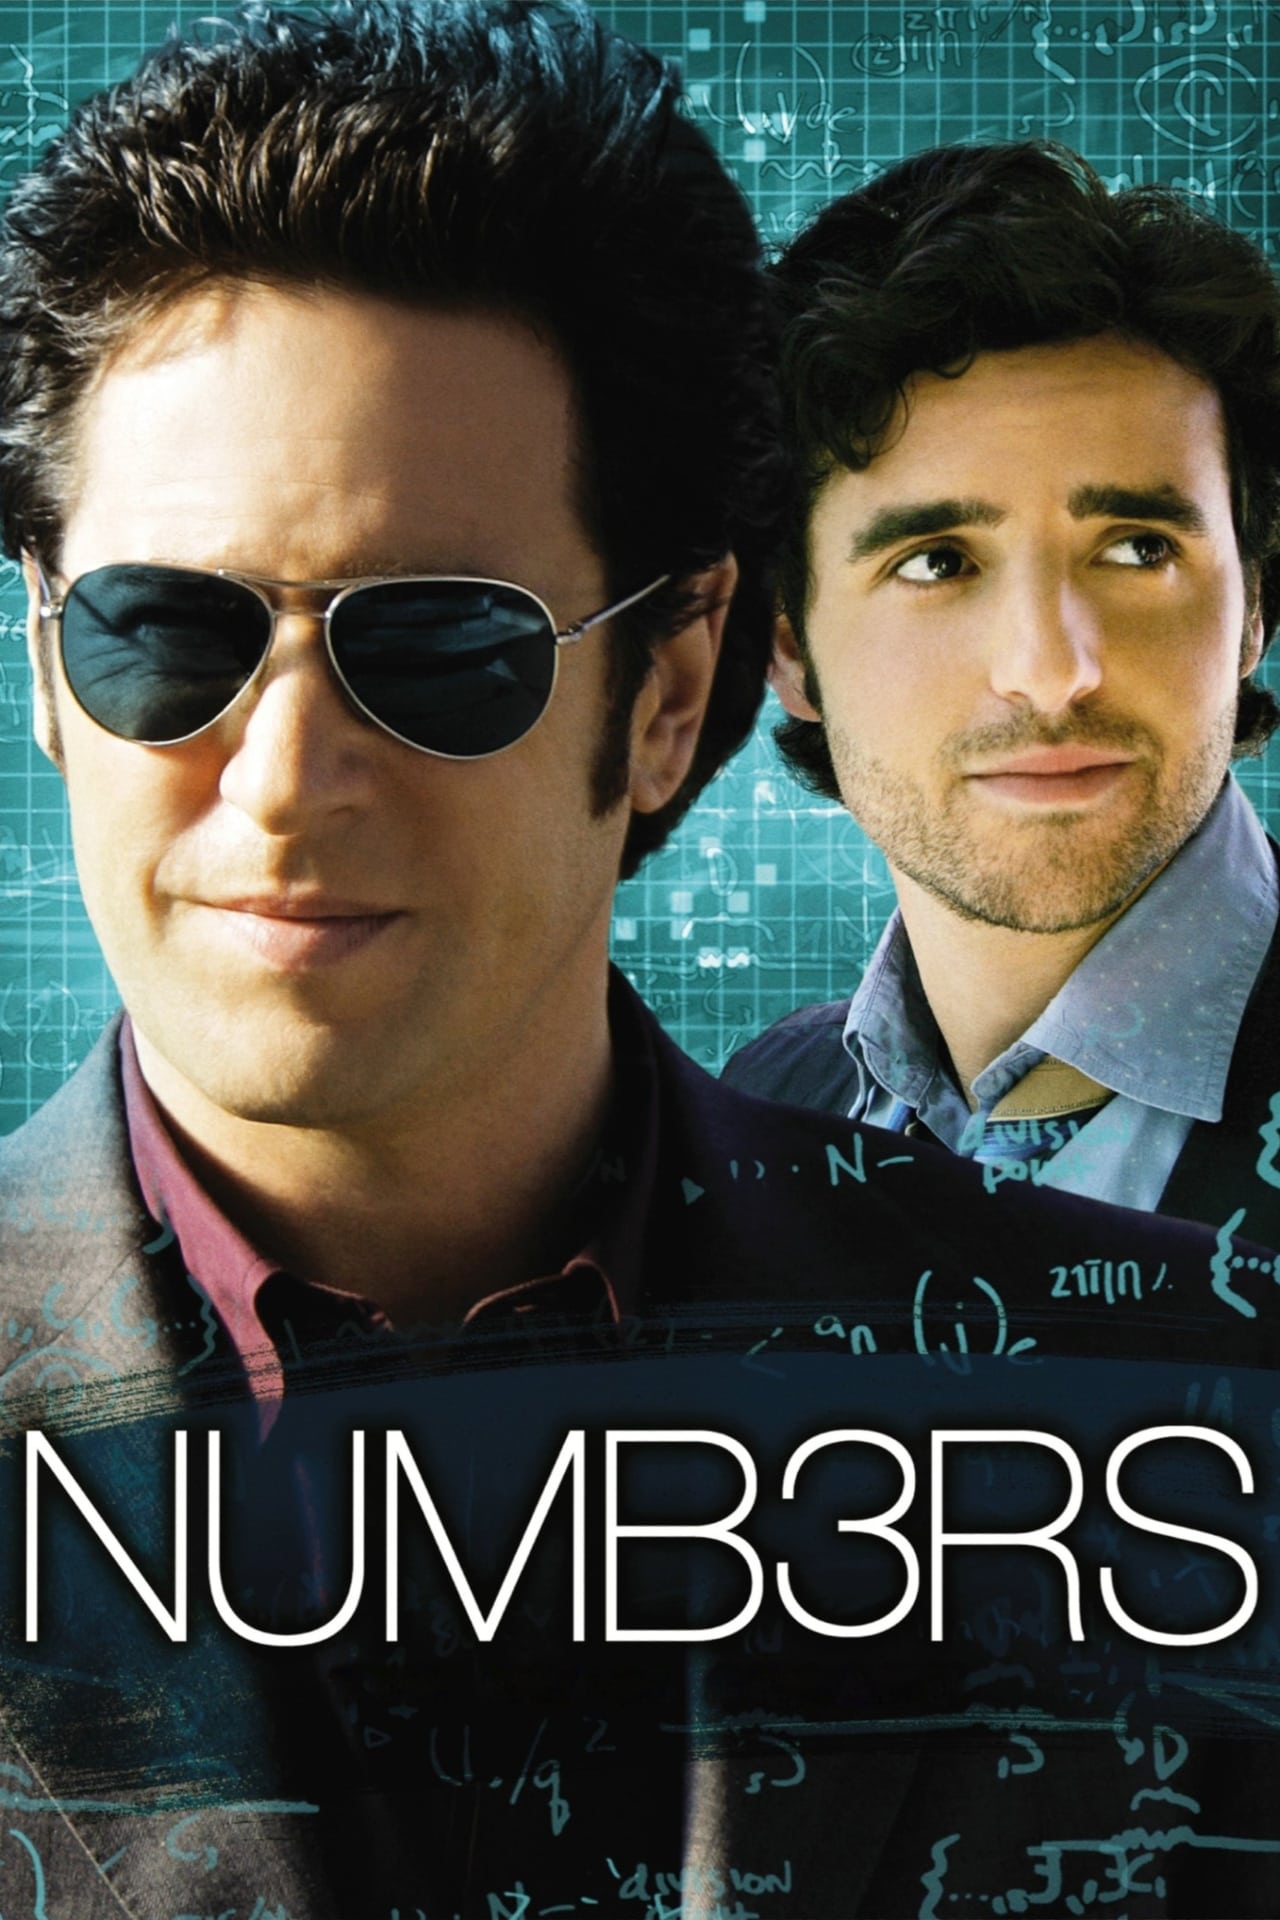 Numb3rs (season 4)